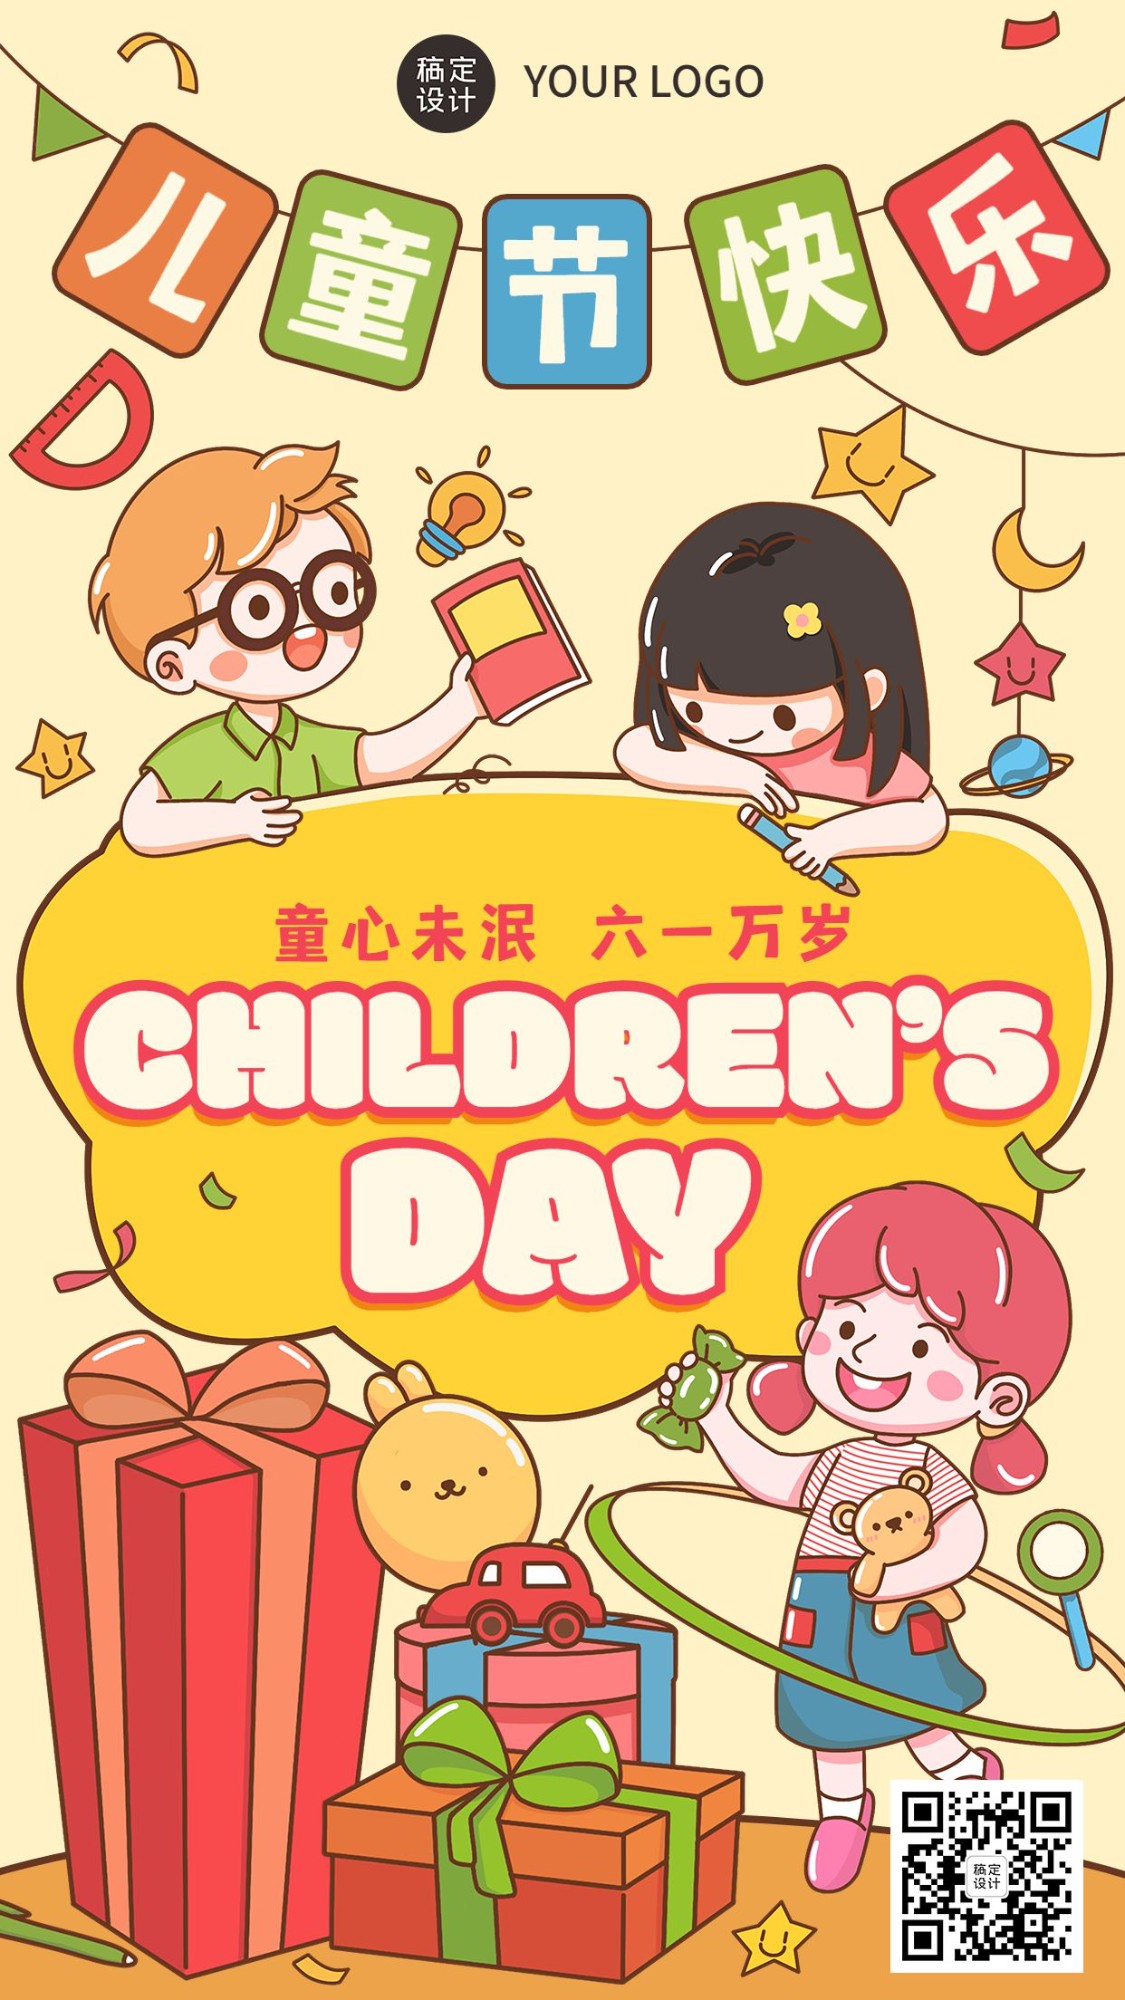 六一儿童节可爱卡通插画手机海报_图片模板素材-稿定设计